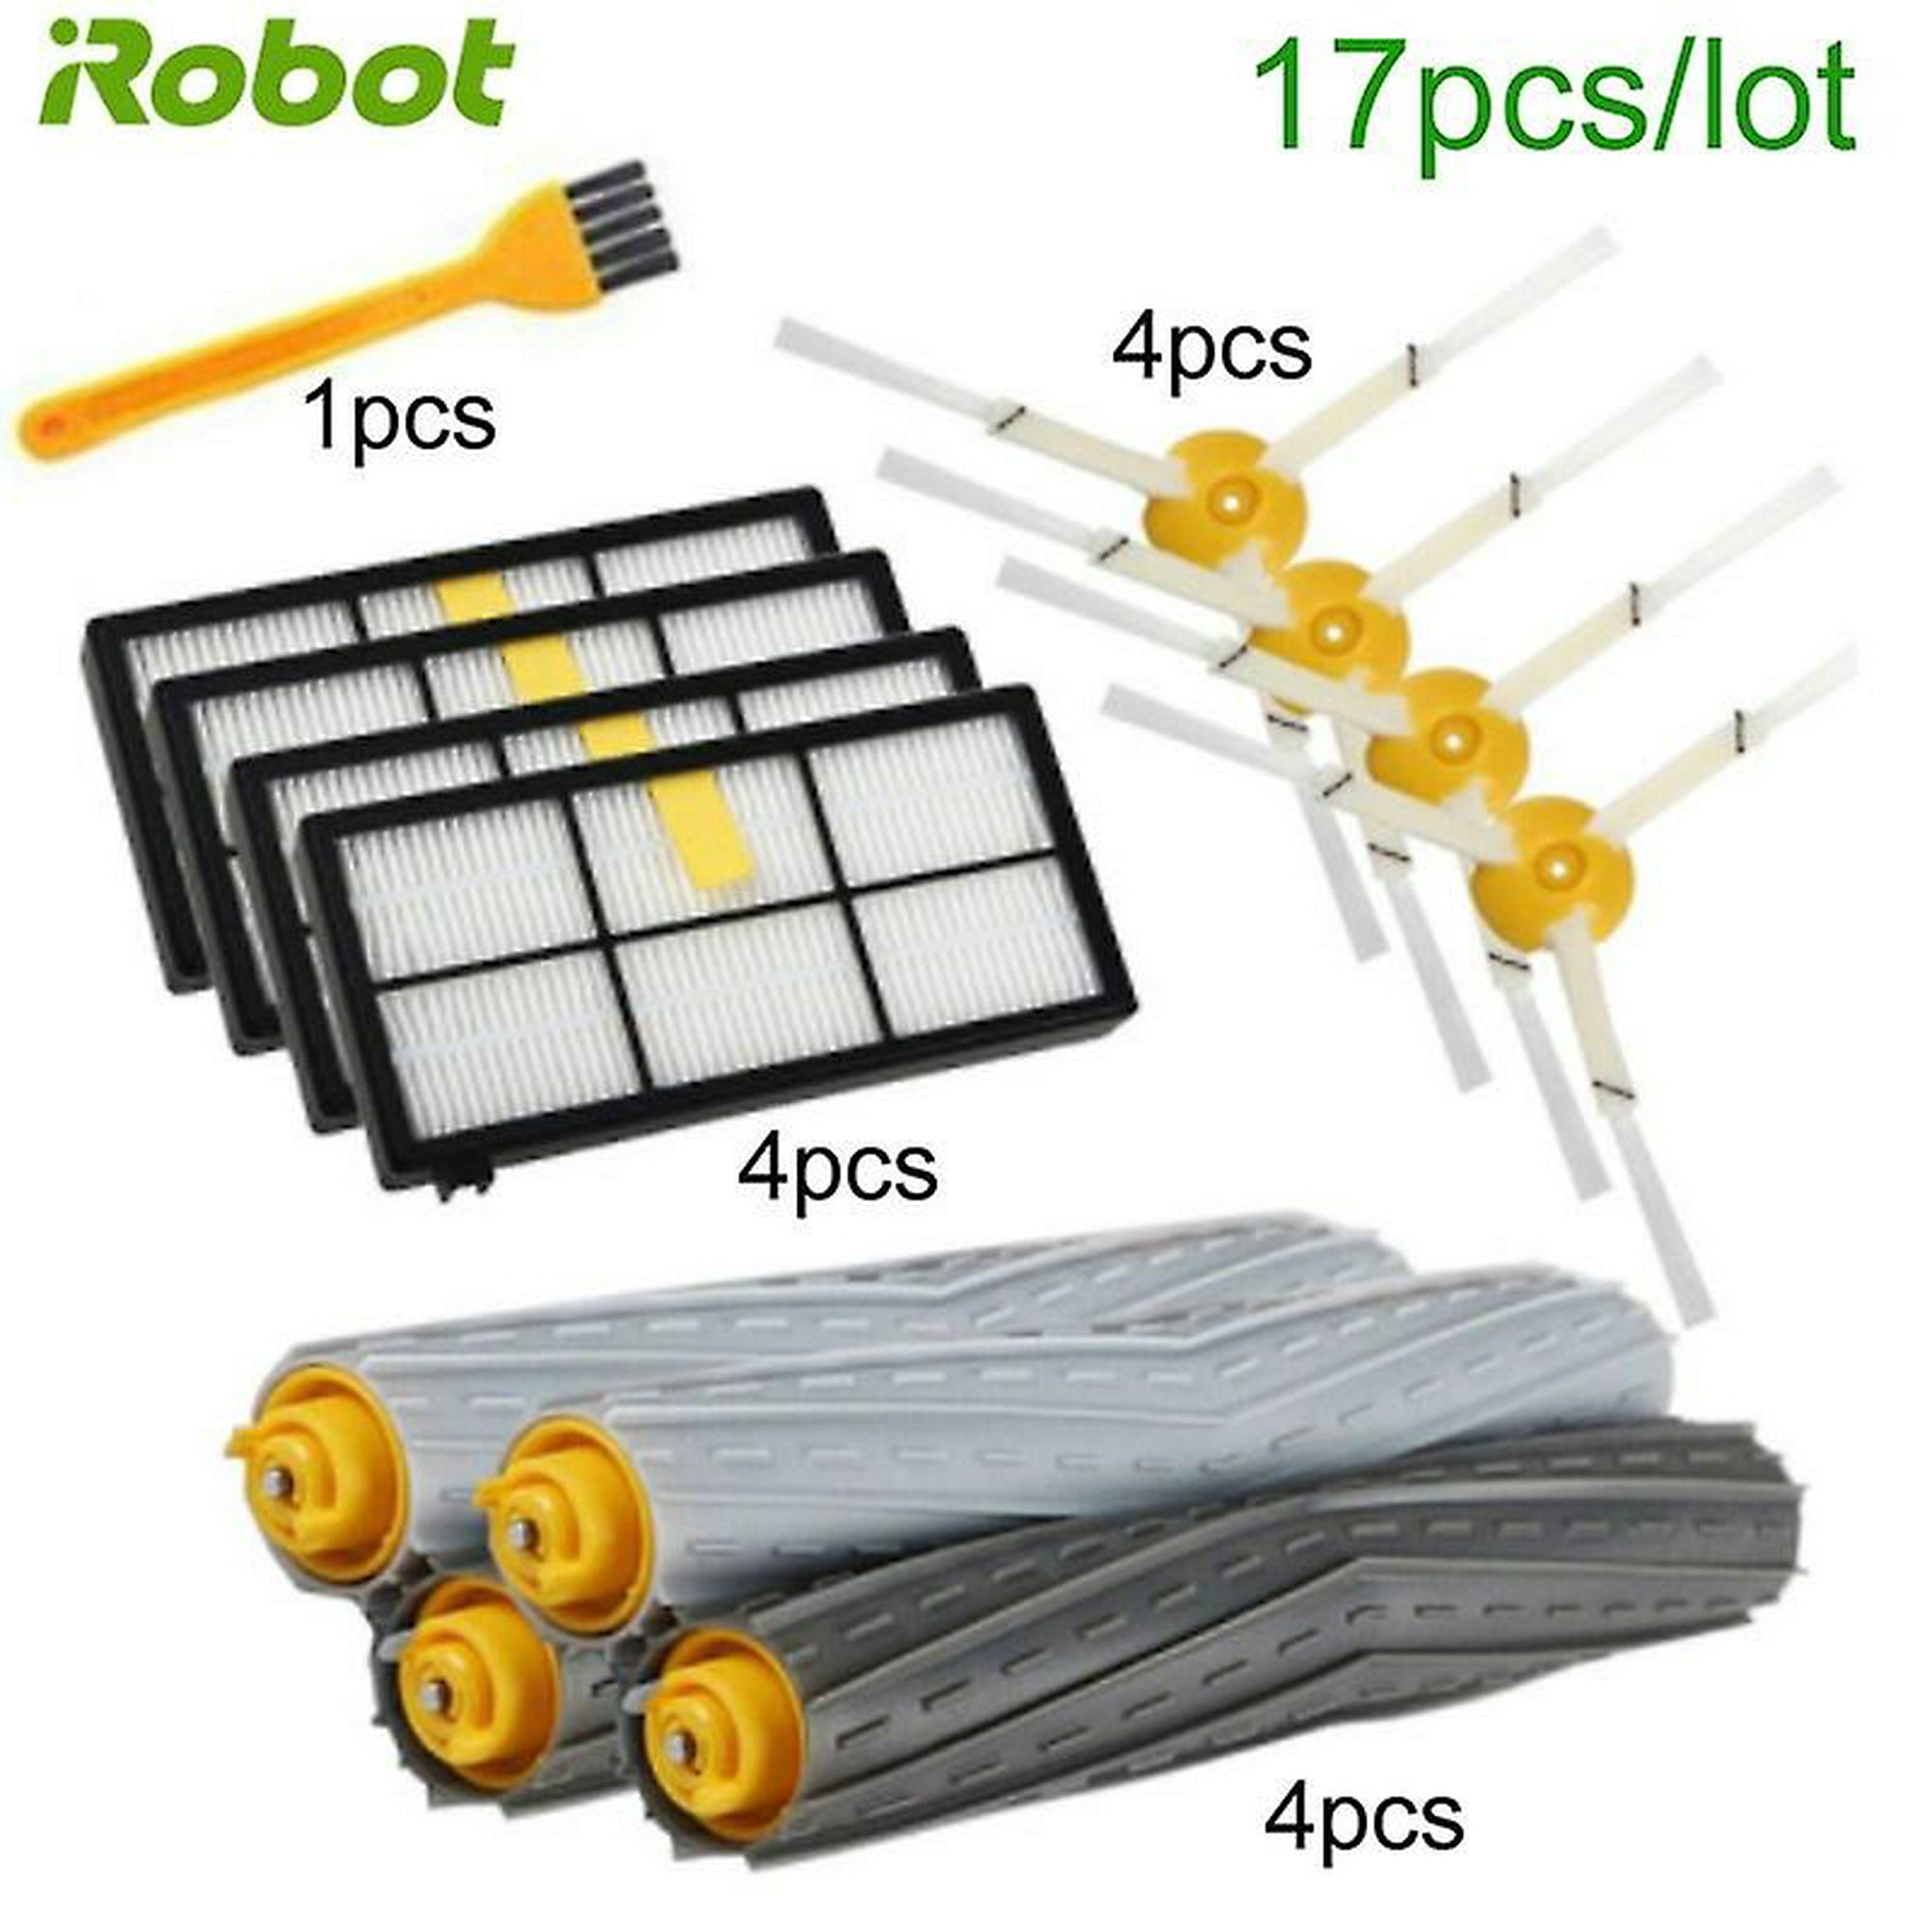 Juego de filtros hepa para robot aspirador Irobot Roomba serie 800, 900 -  Comprar